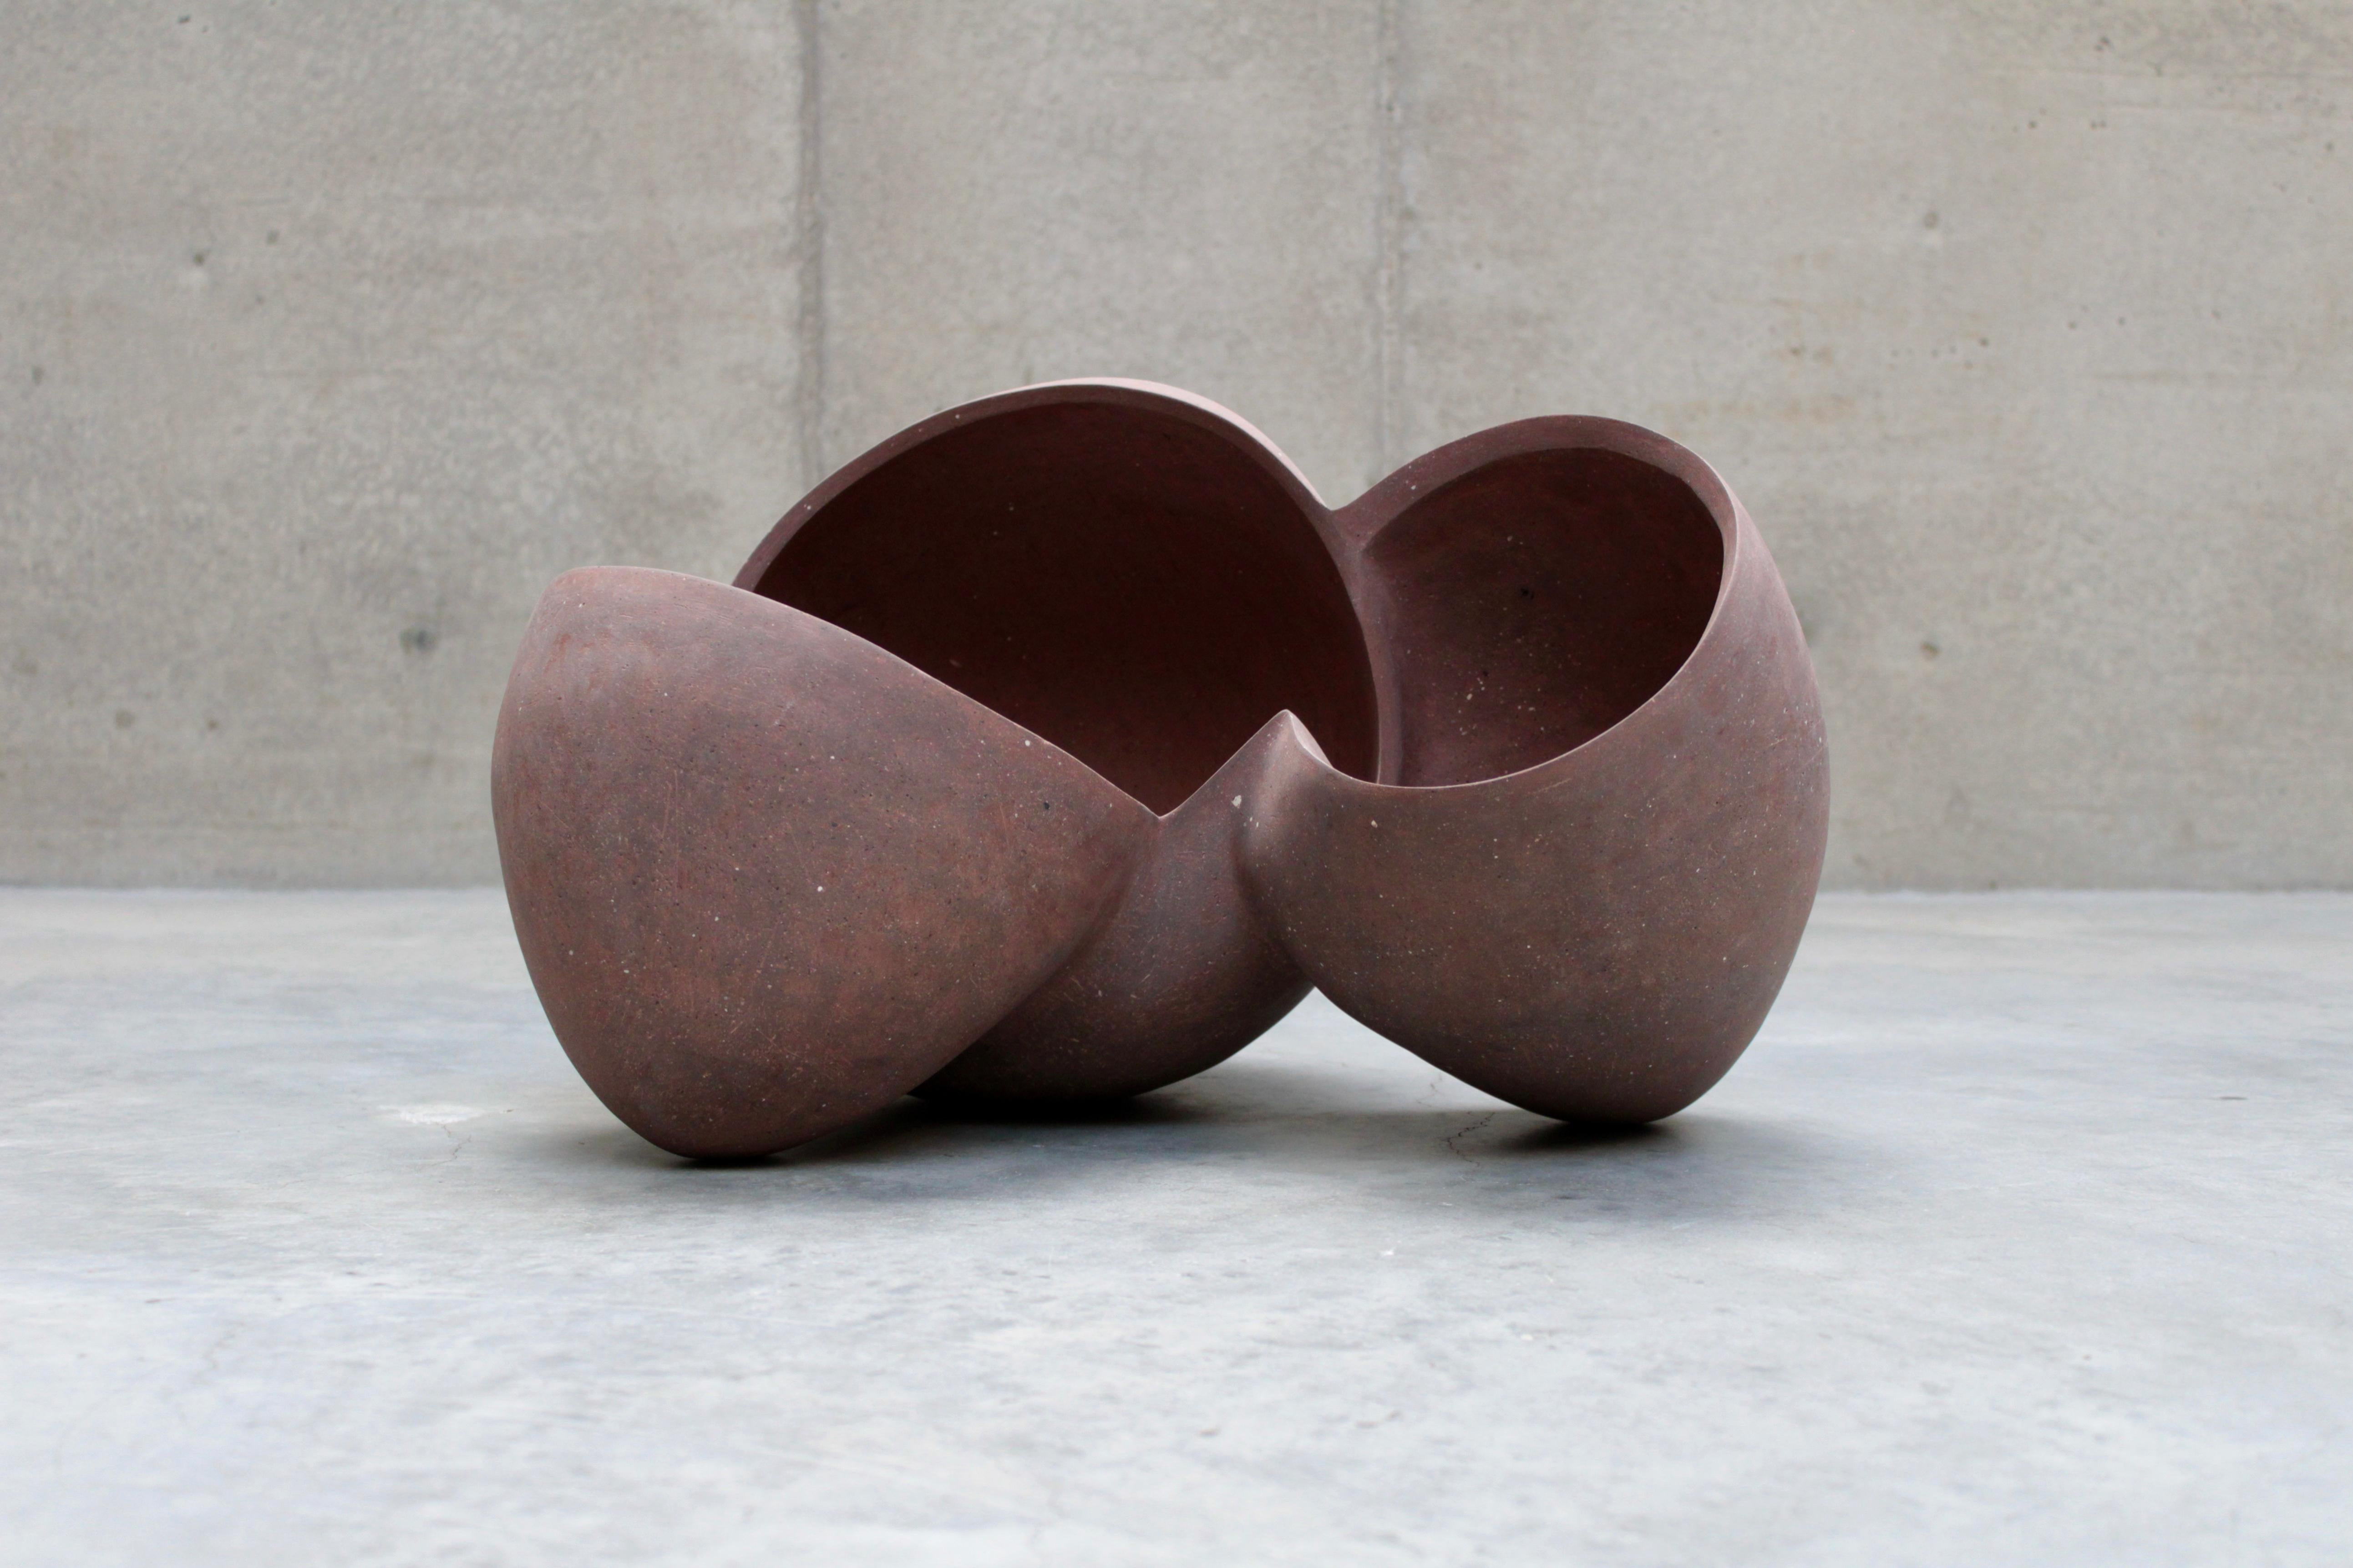 Titel: Magnolie 04 
Jahr: 2021
Künstlerin: Zoë Powell

Große, frei geformte Keramikskulptur aus einer Mischung von eisenhaltigem Steinzeugton, der vom Künstler in Minnesota von Hand gesammelt wurde. Die Oberfläche wird von Hand mit